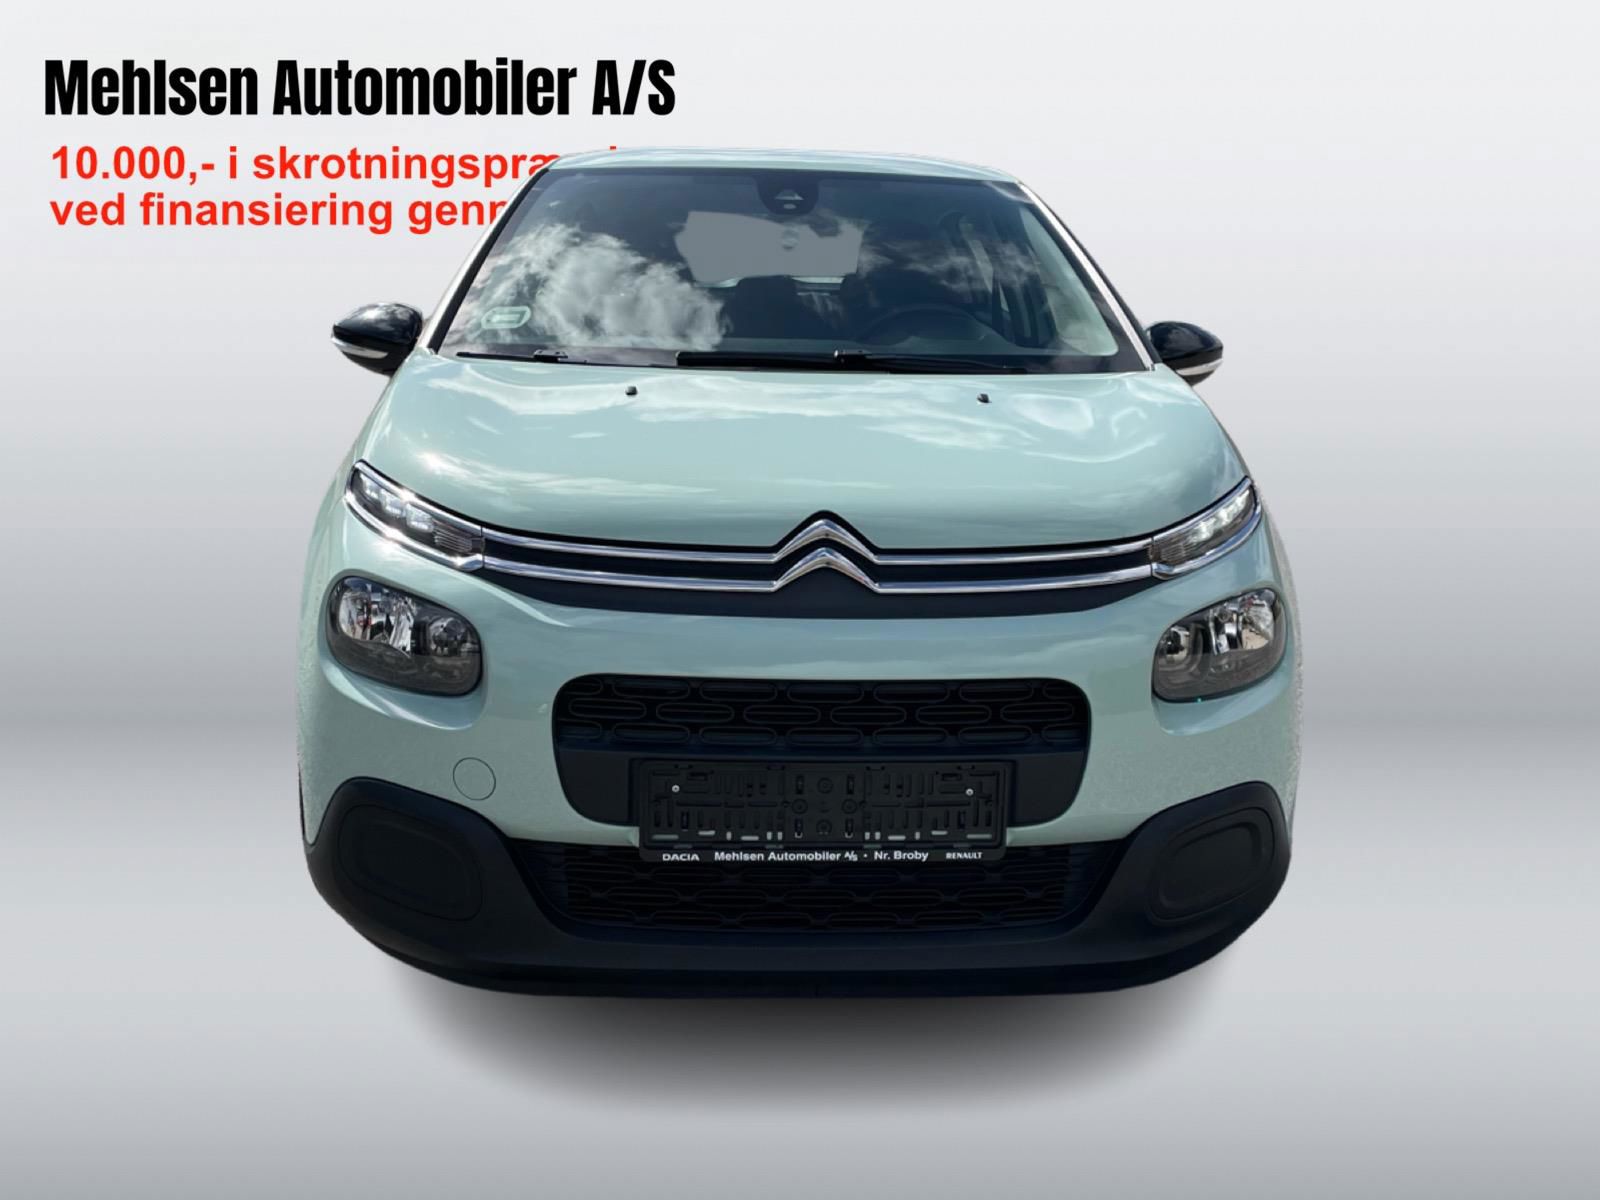 Billede af Citroën C3 1,5 Blue HDi Cool start/stop 100HK 5d